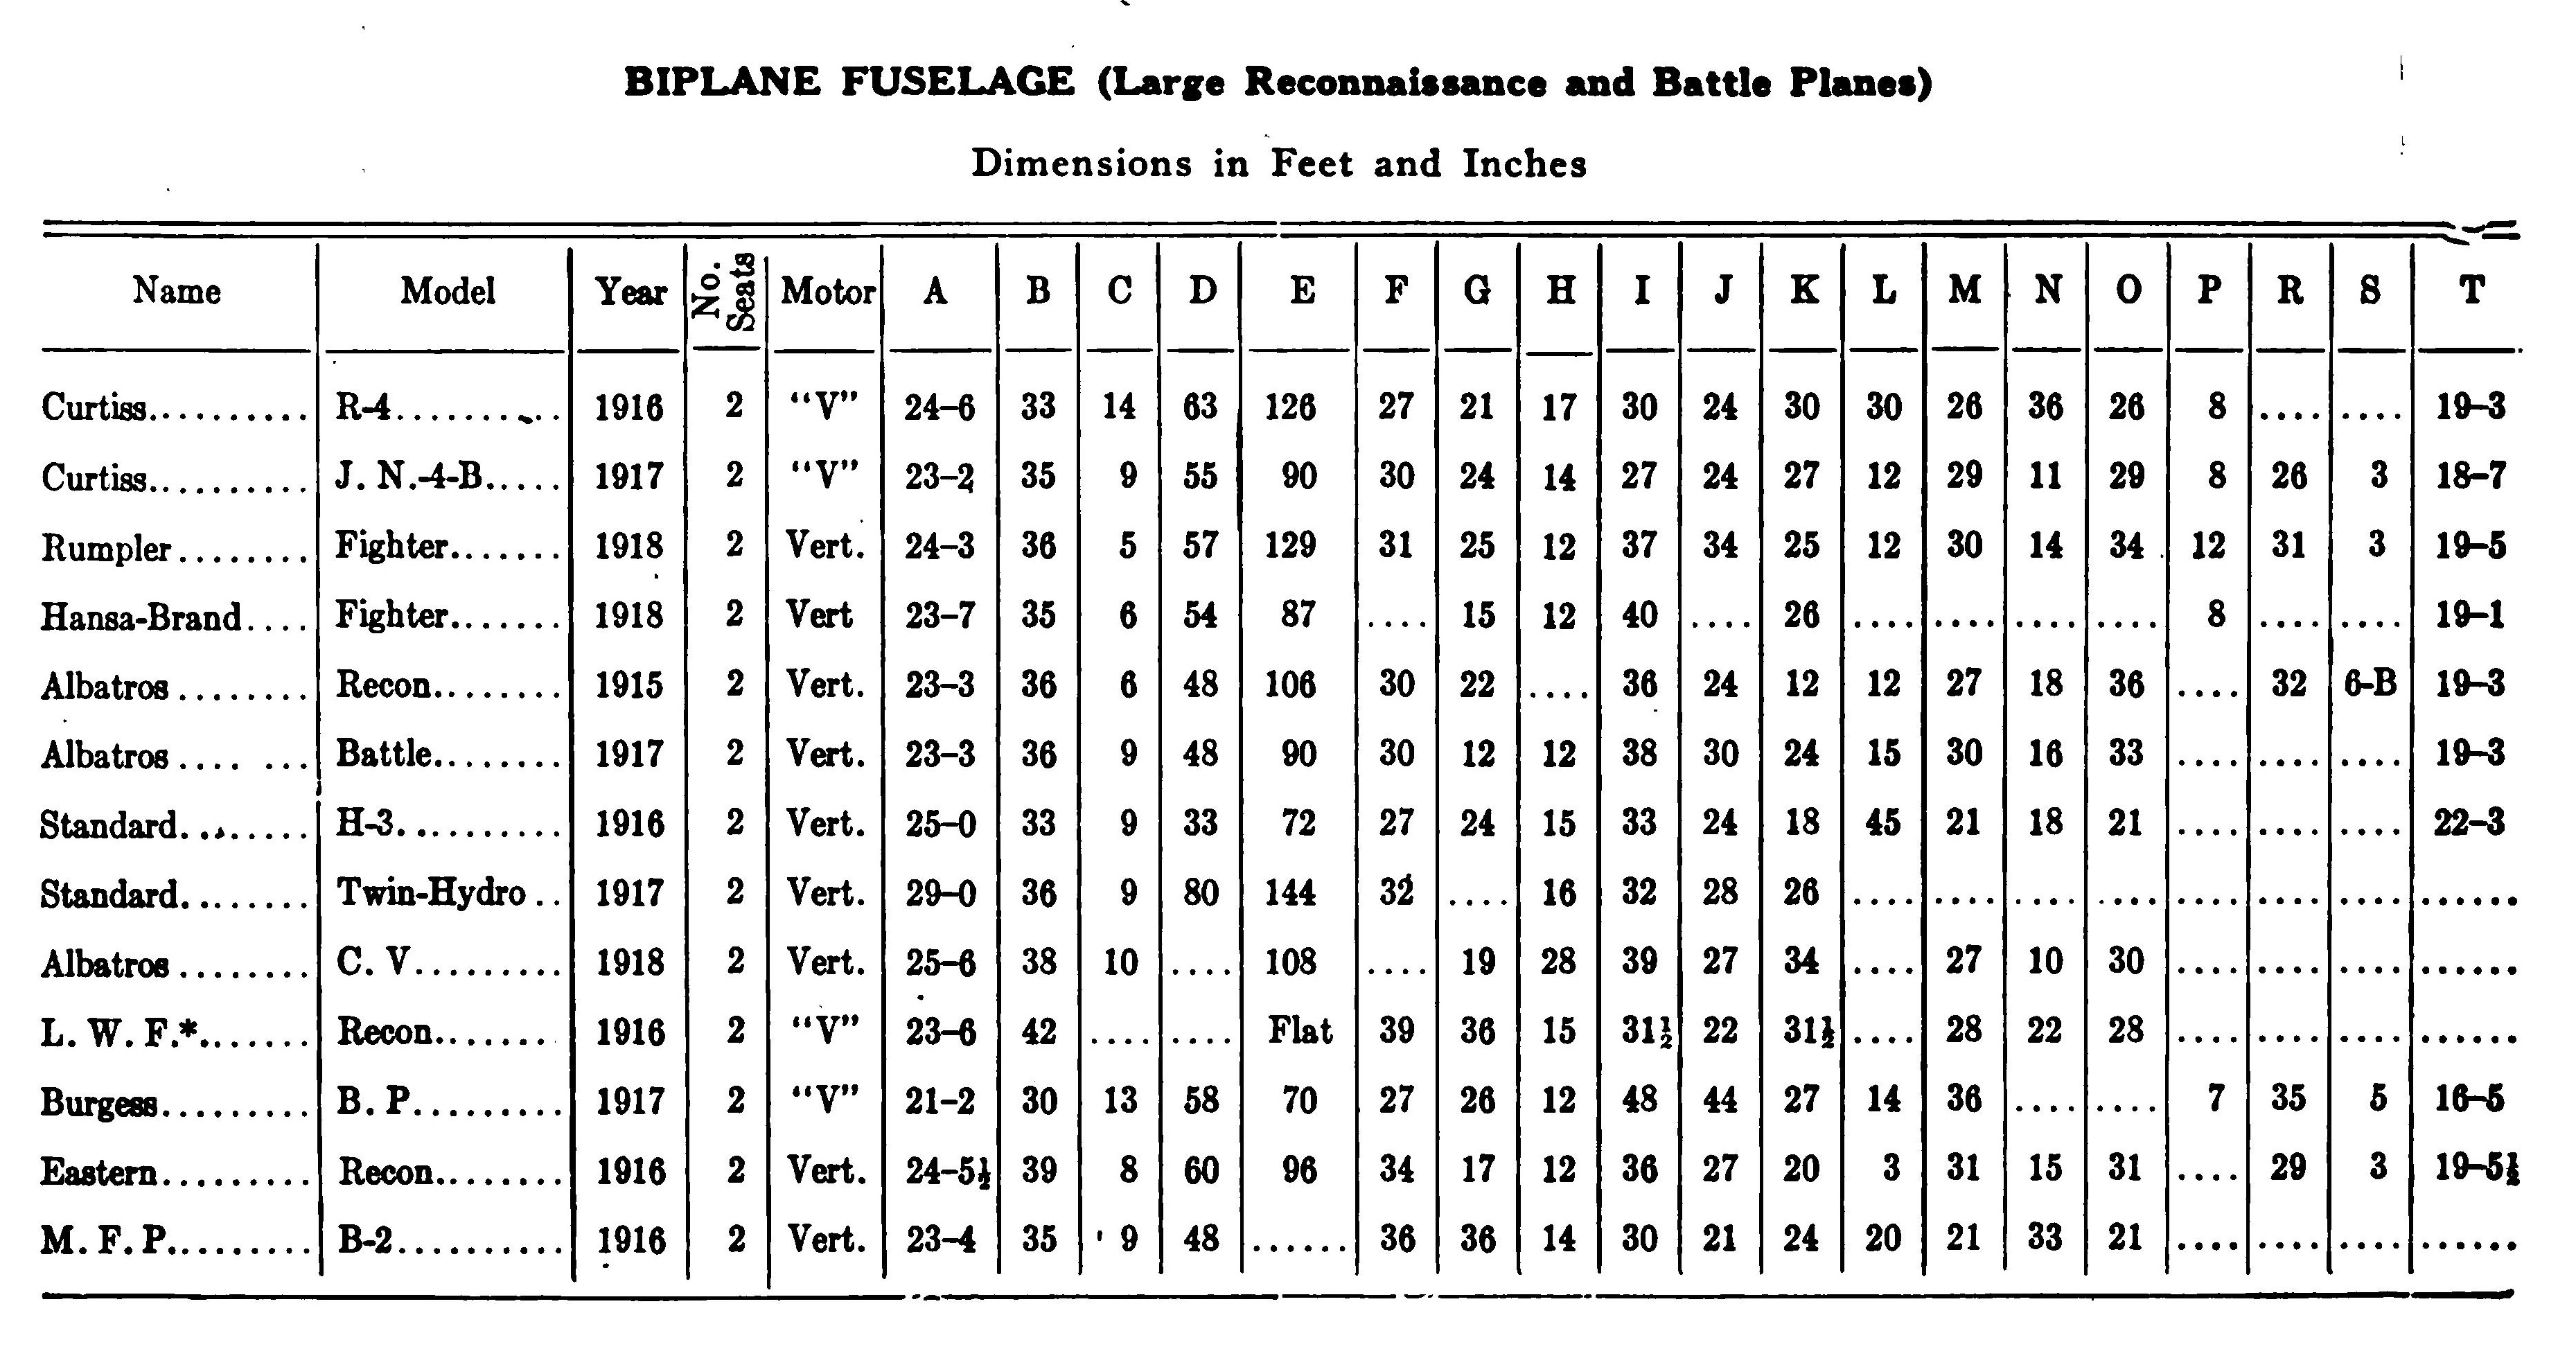 Fig. 20. Fuselage Dimension Diagrams